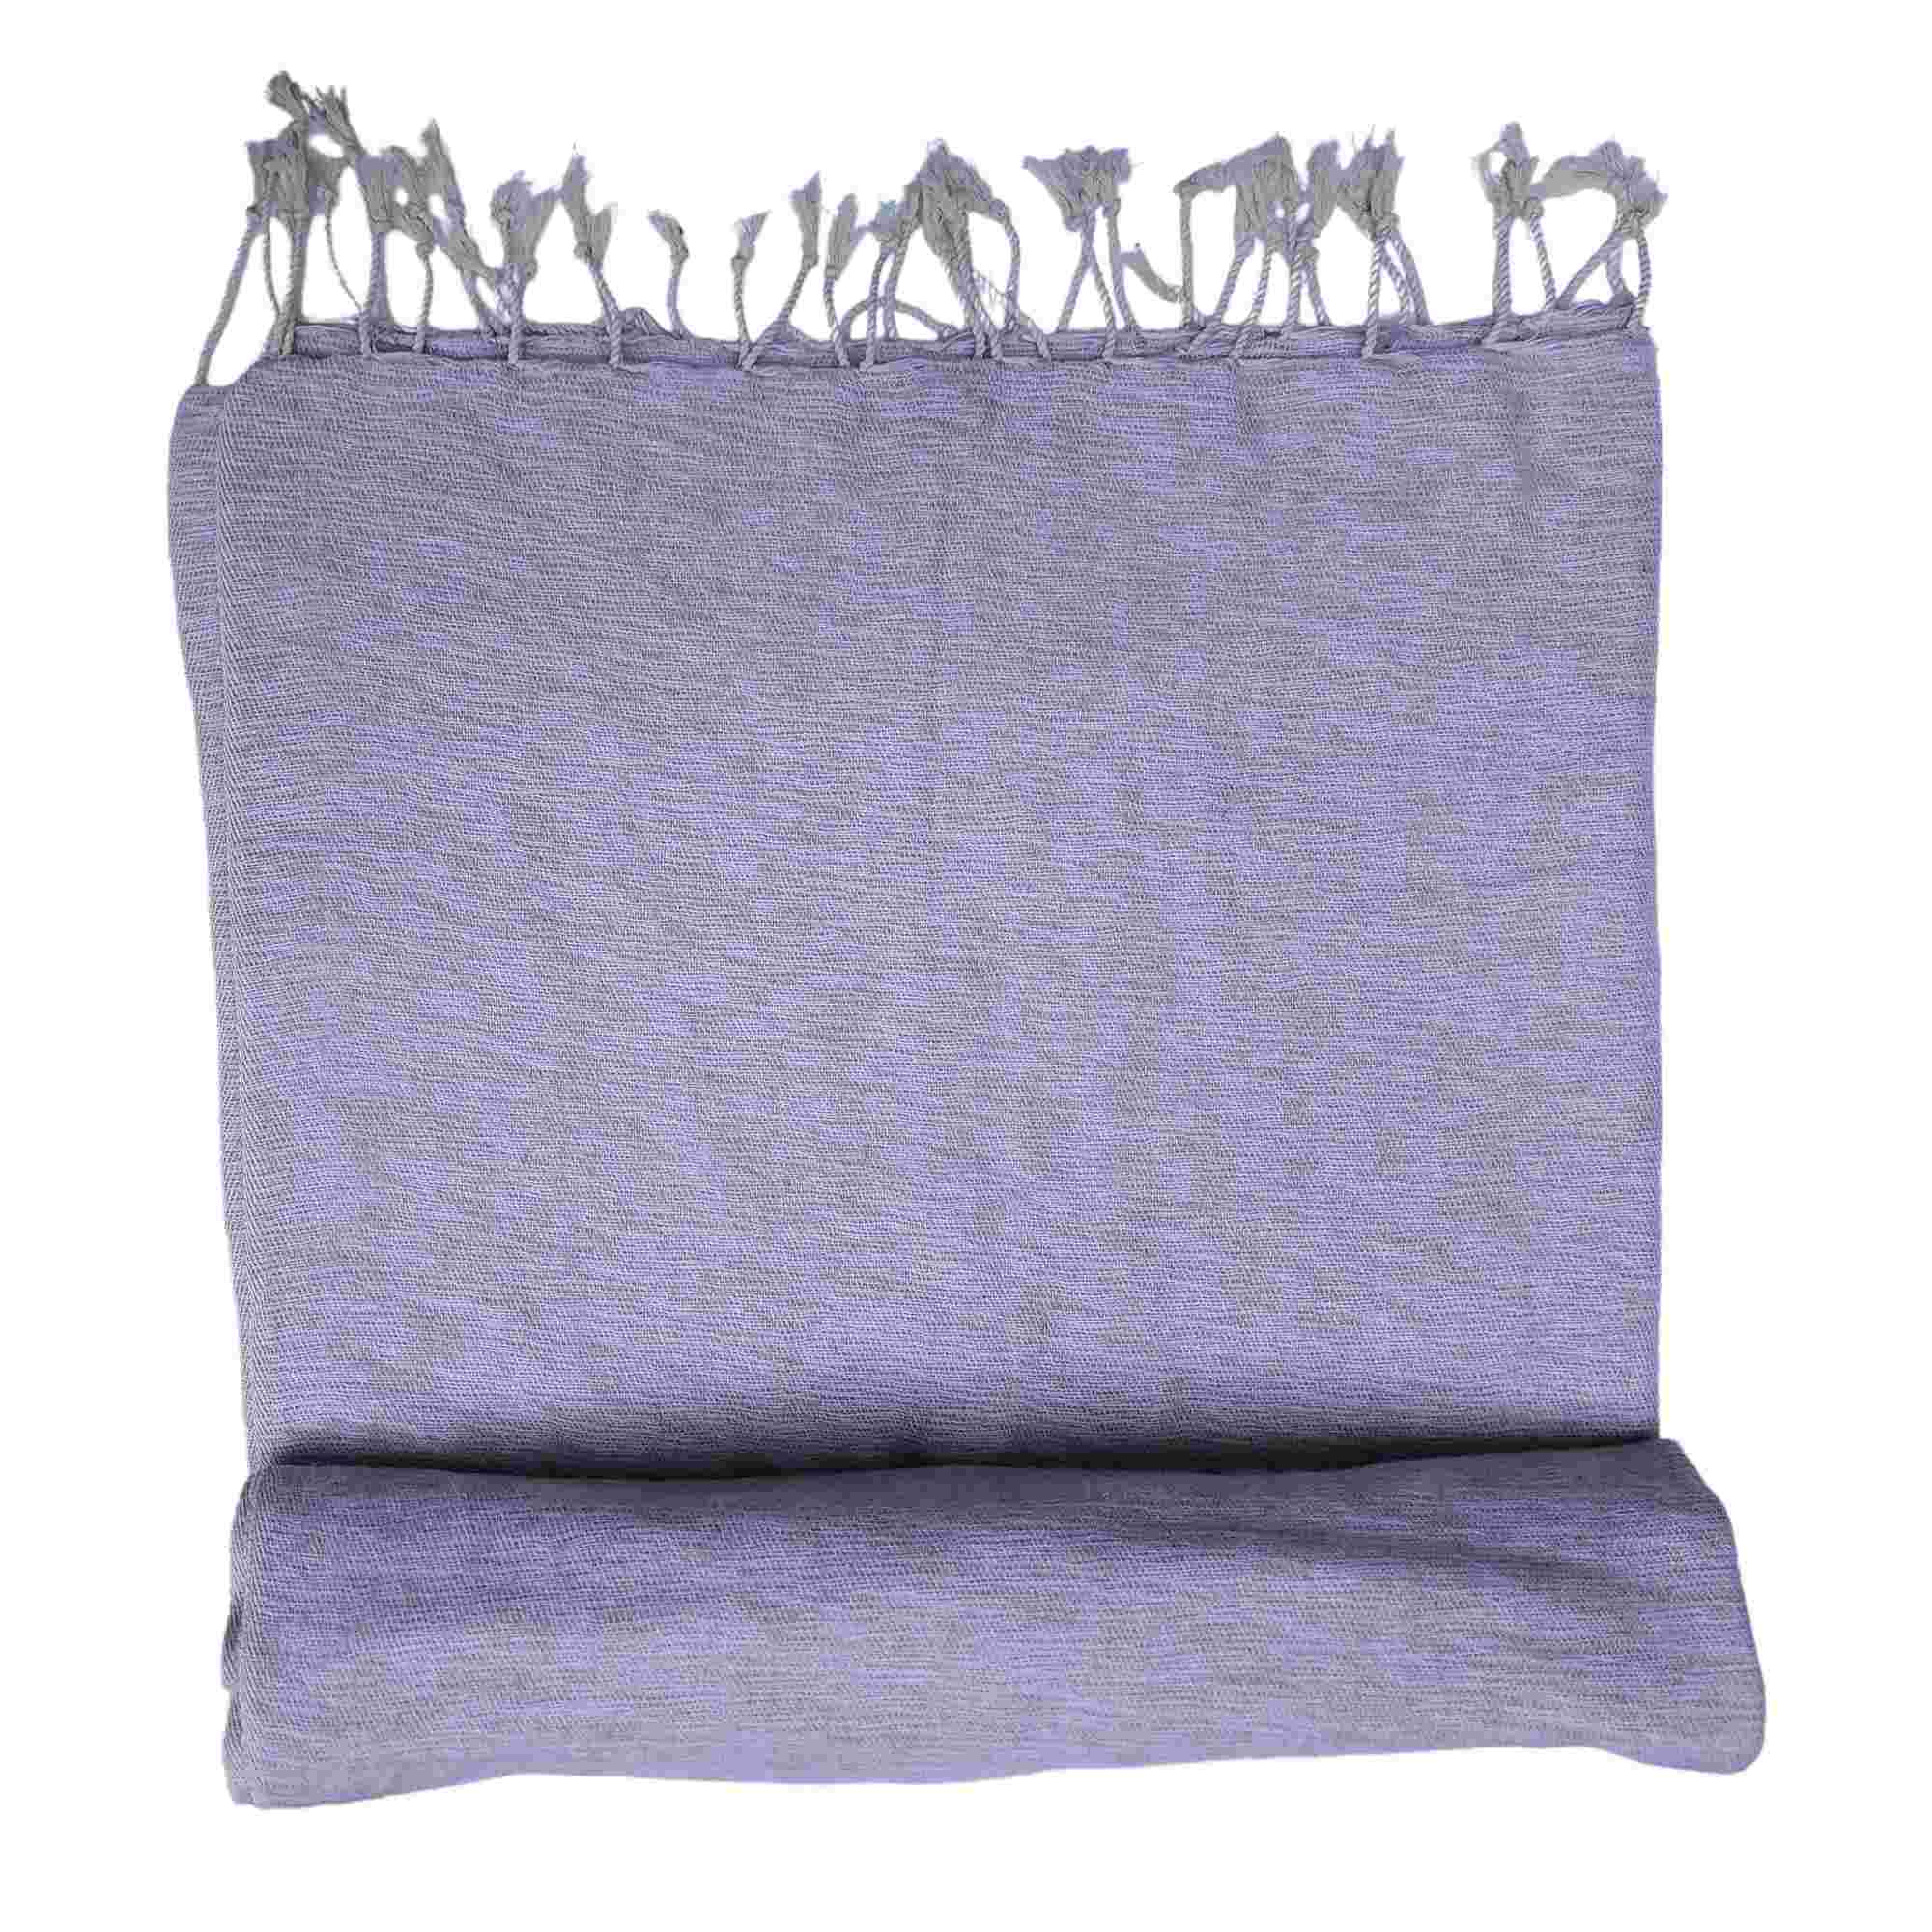 Yak Wool Blanket, Nepali Acrylic Hand Loom Blanket, grey Color, large Size